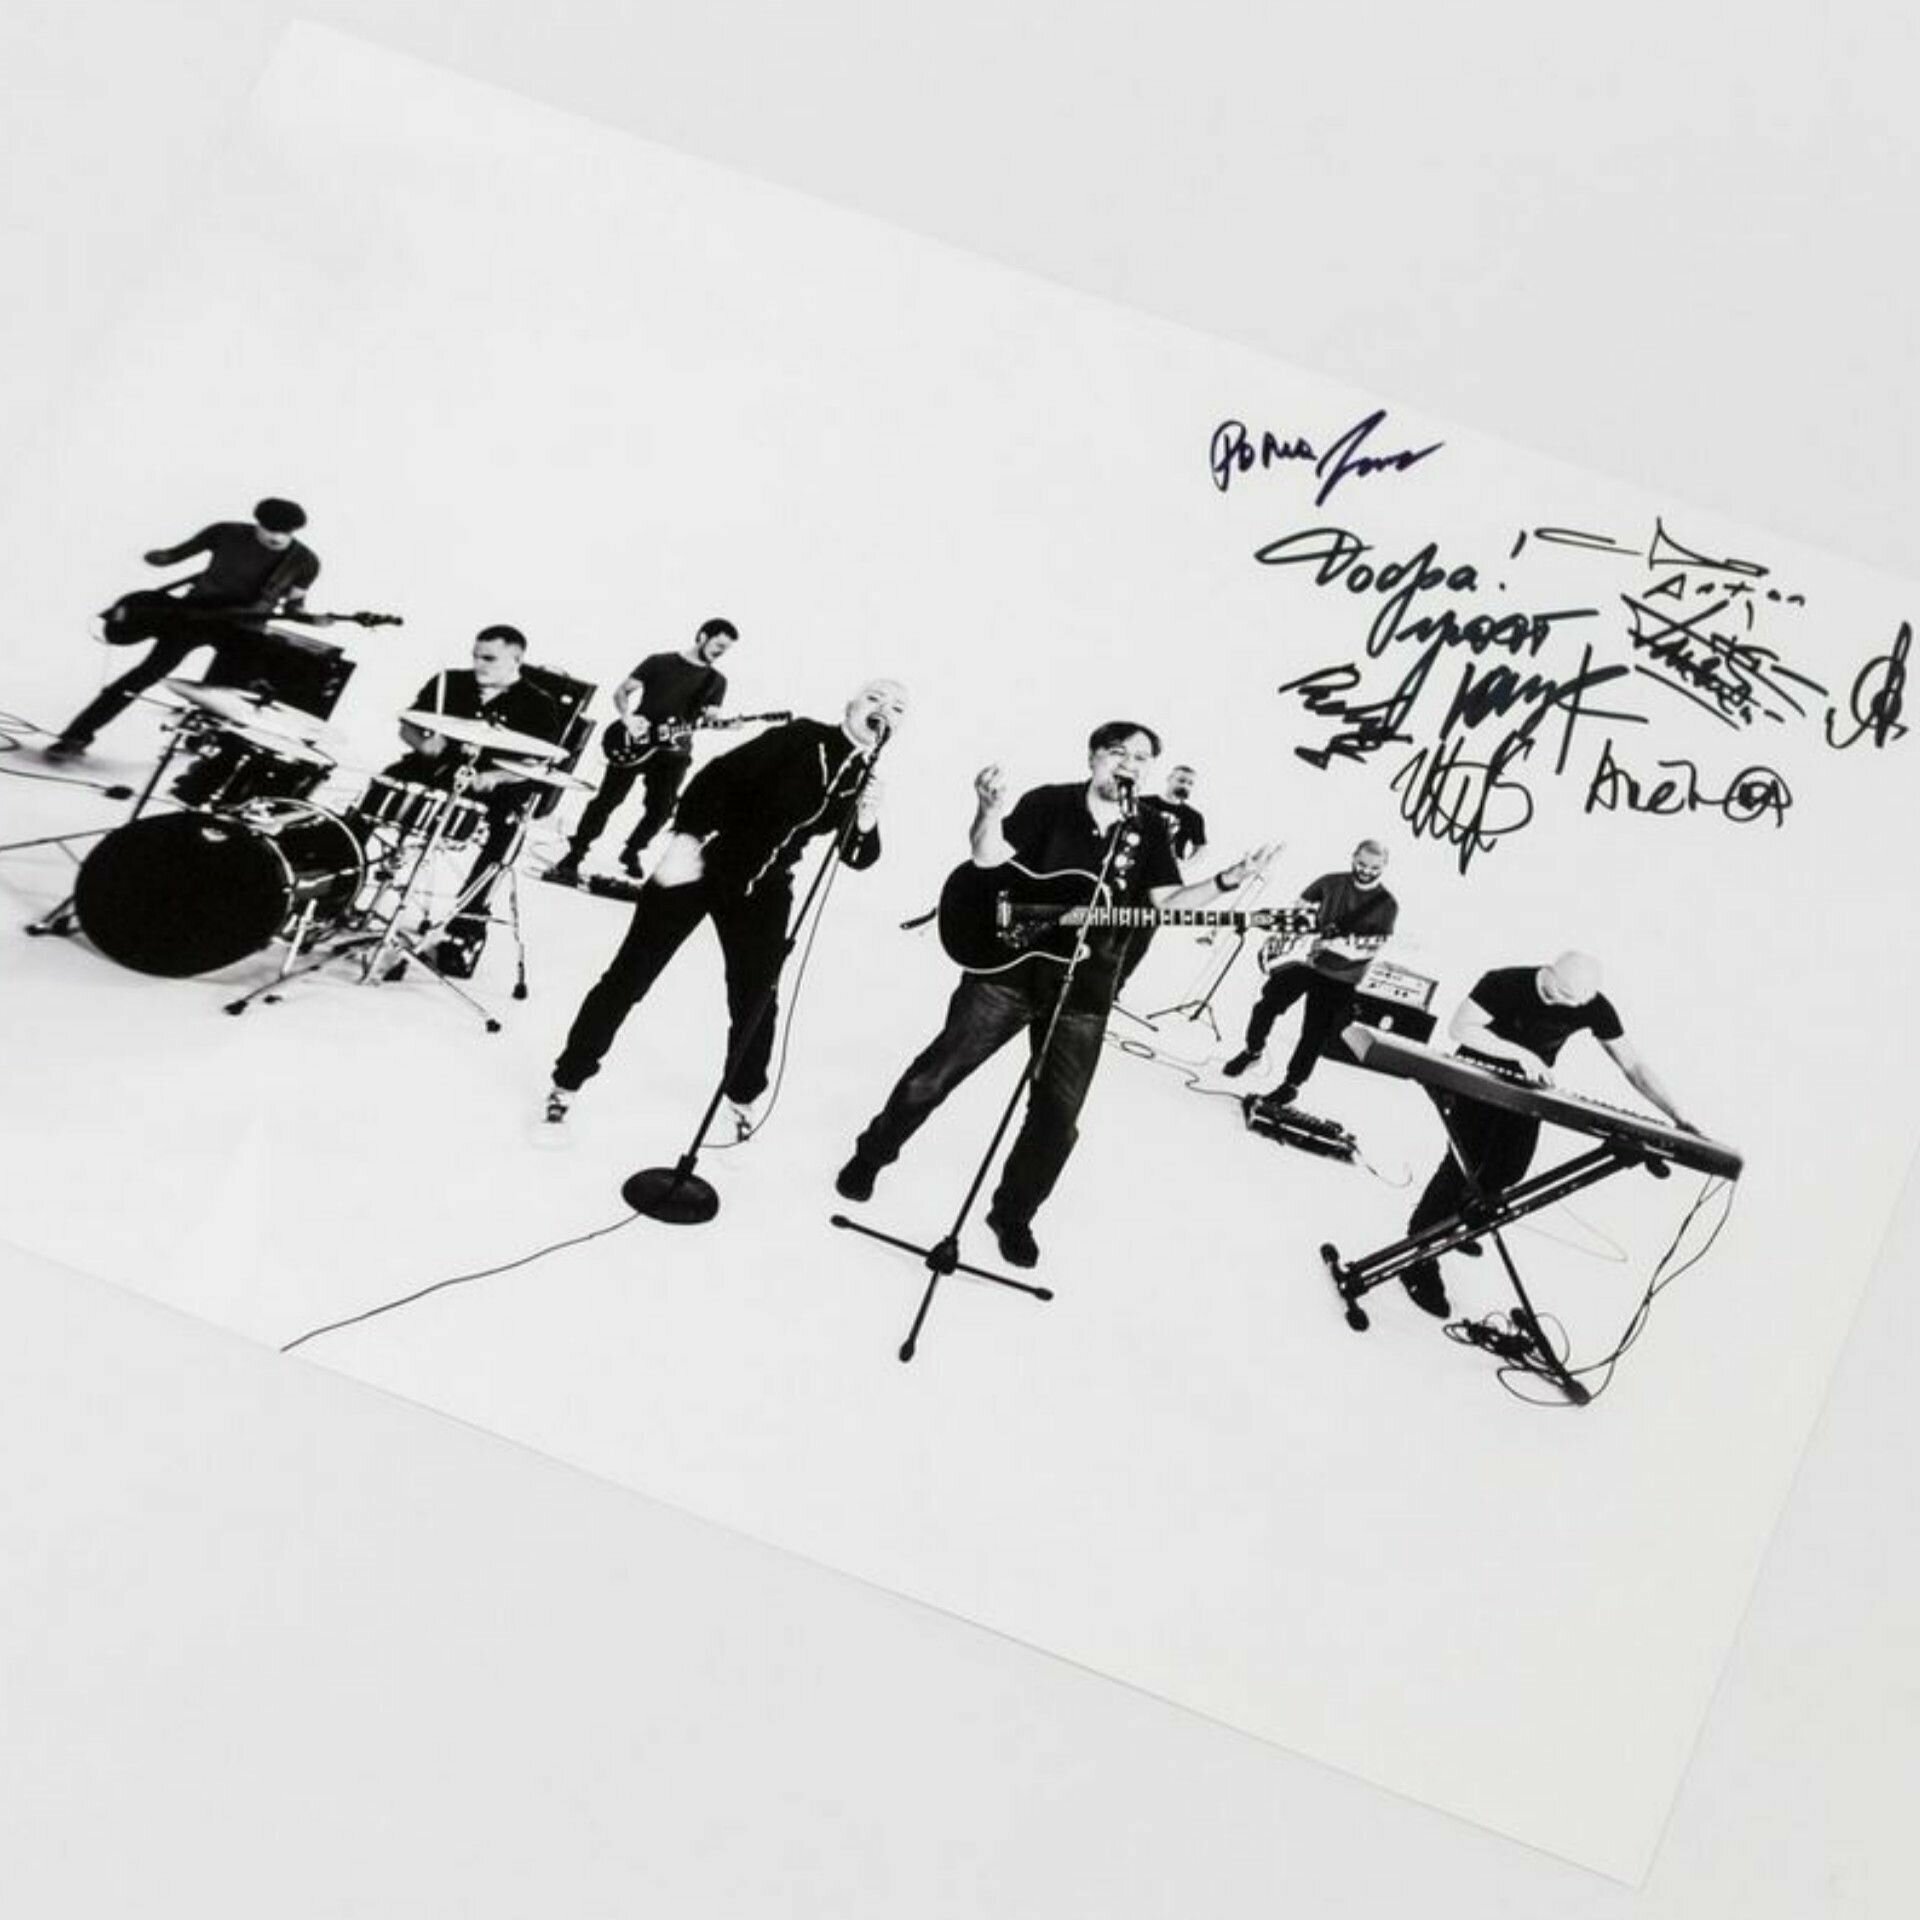 Постер формата А3 группы ДДТ. Подарочный экземпляр с автографами музыкантов